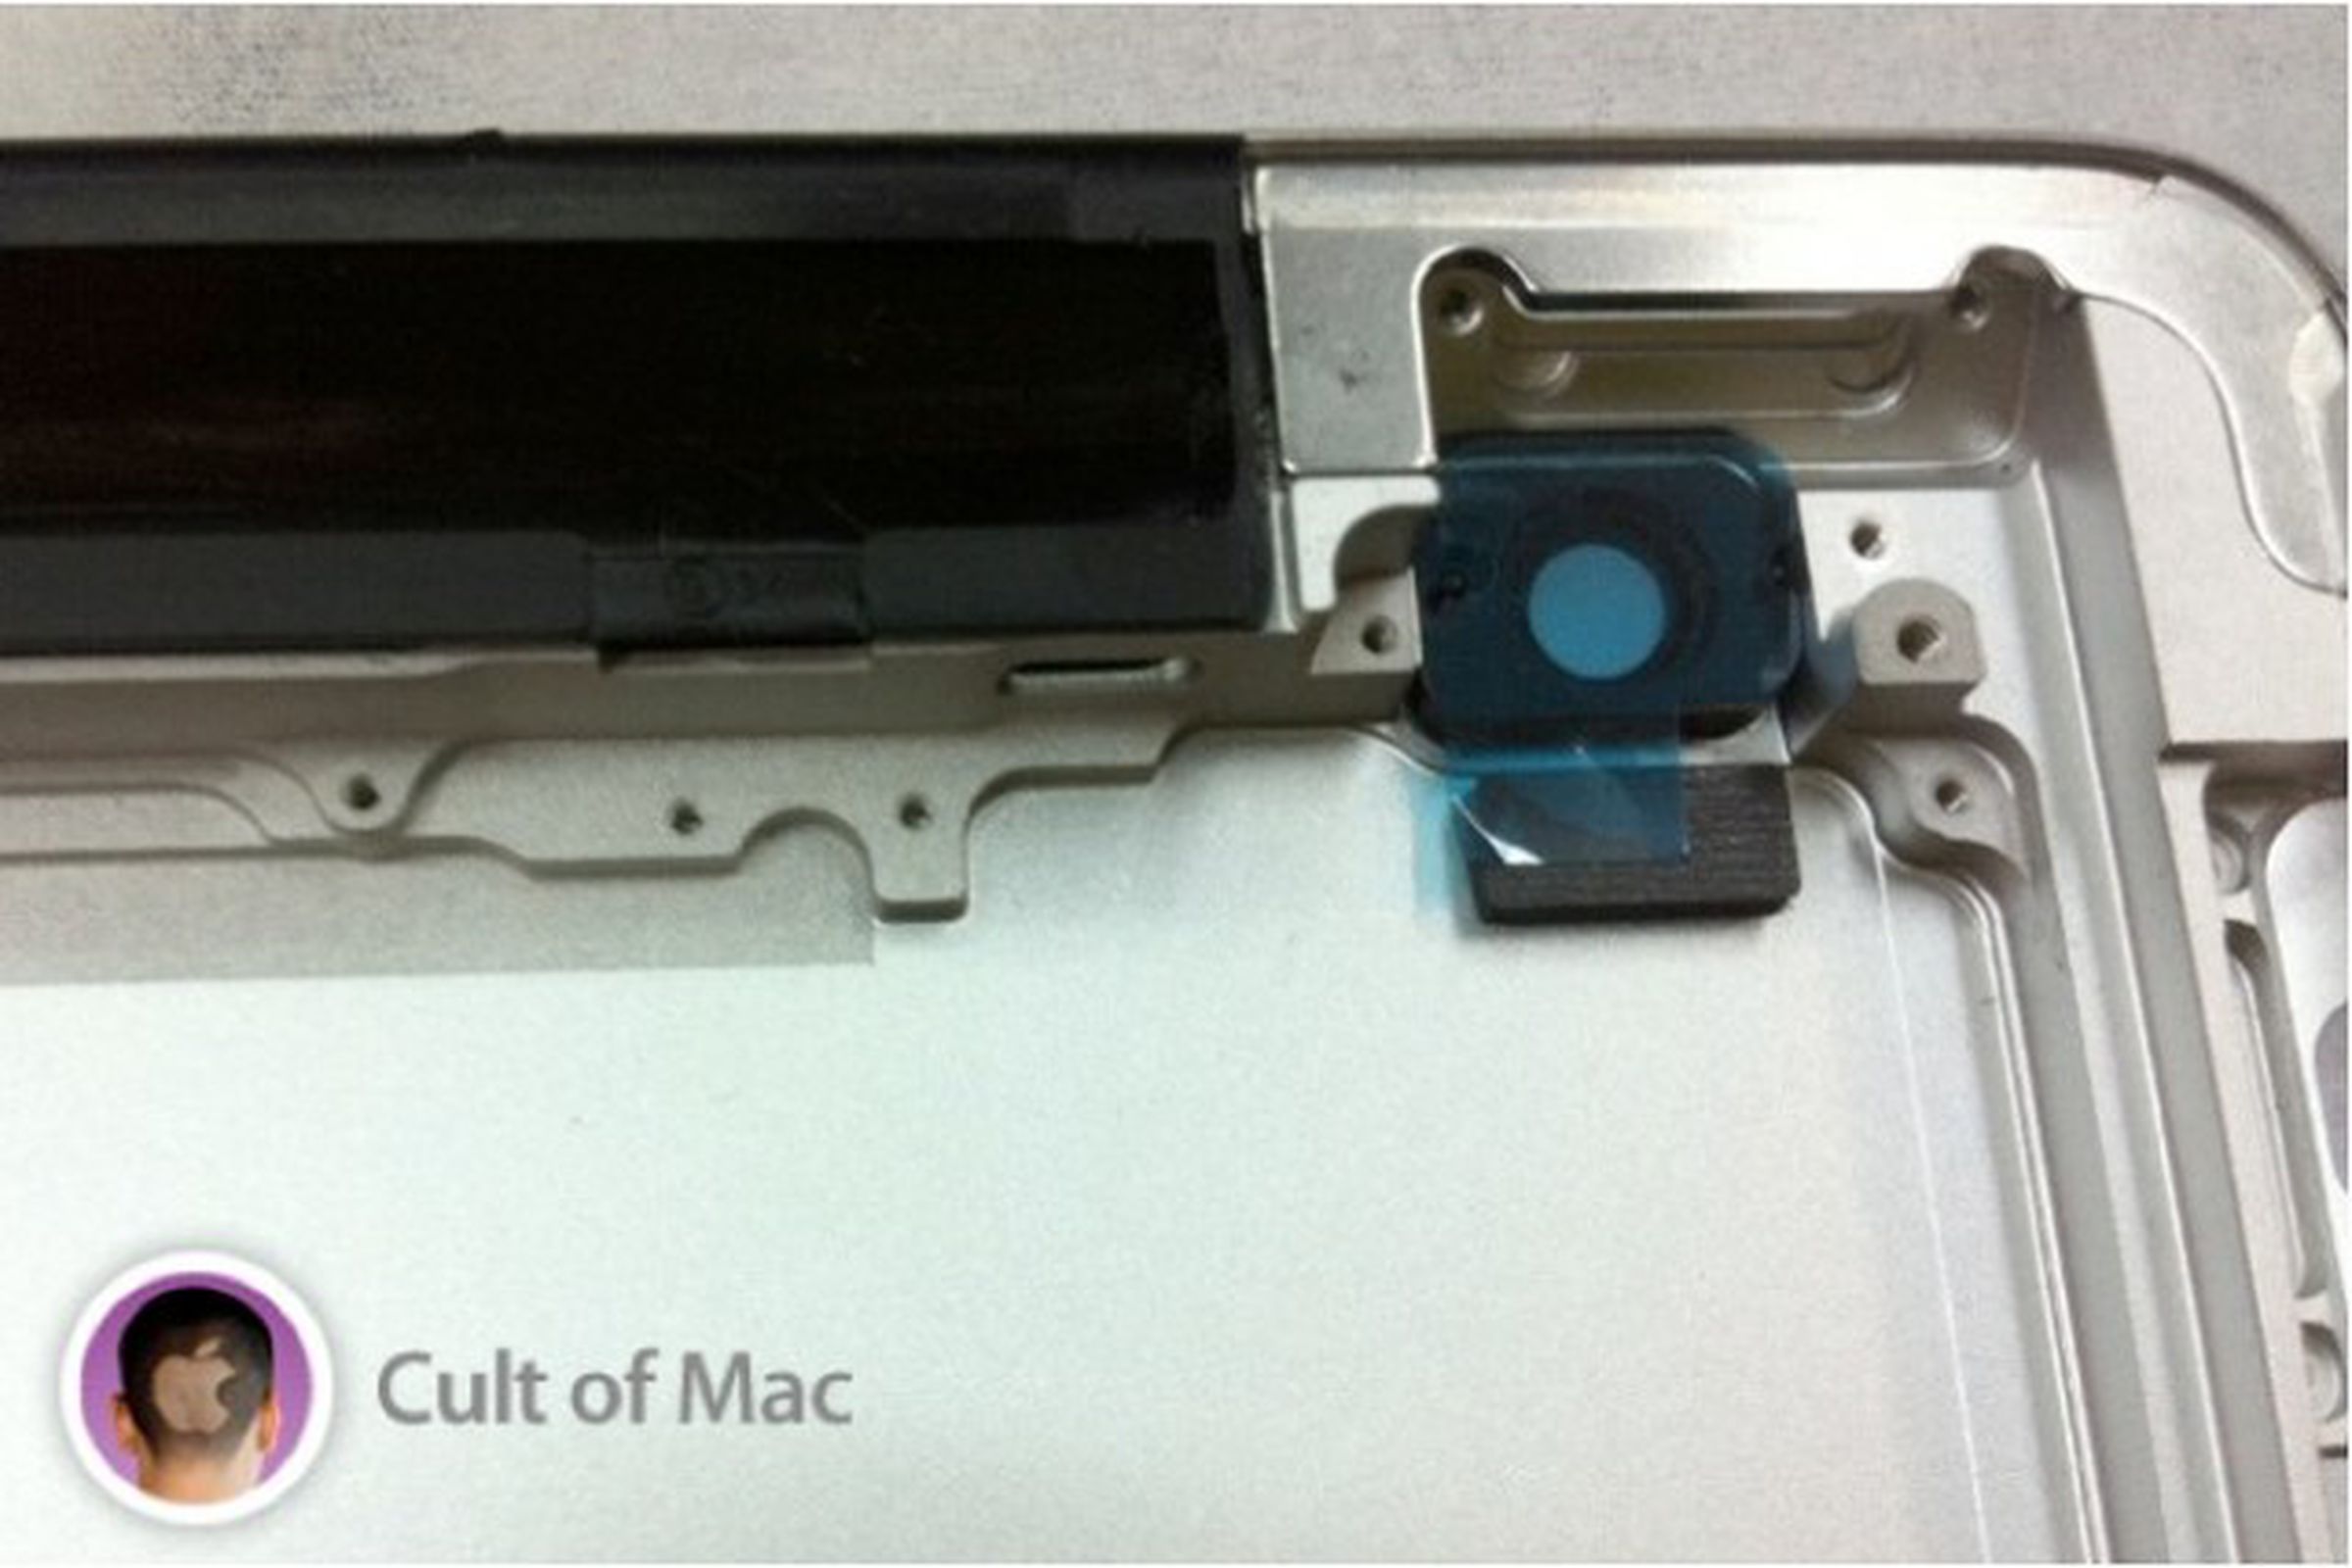 iPad 3 Cult of Mac